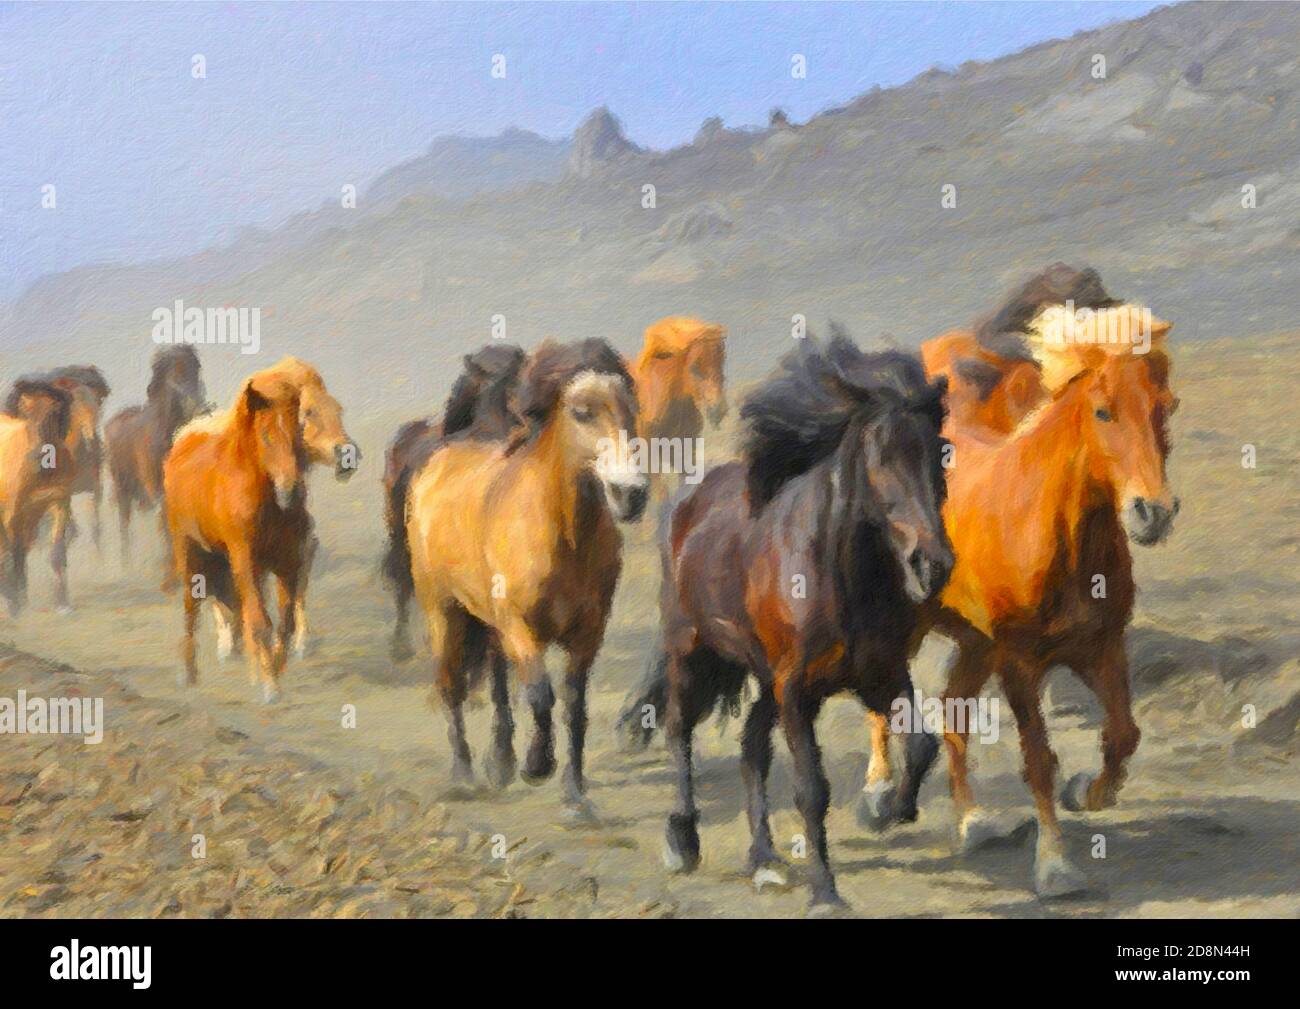 Immagini atmosferiche di cavalli che corrono nel deserto. Foto Stock